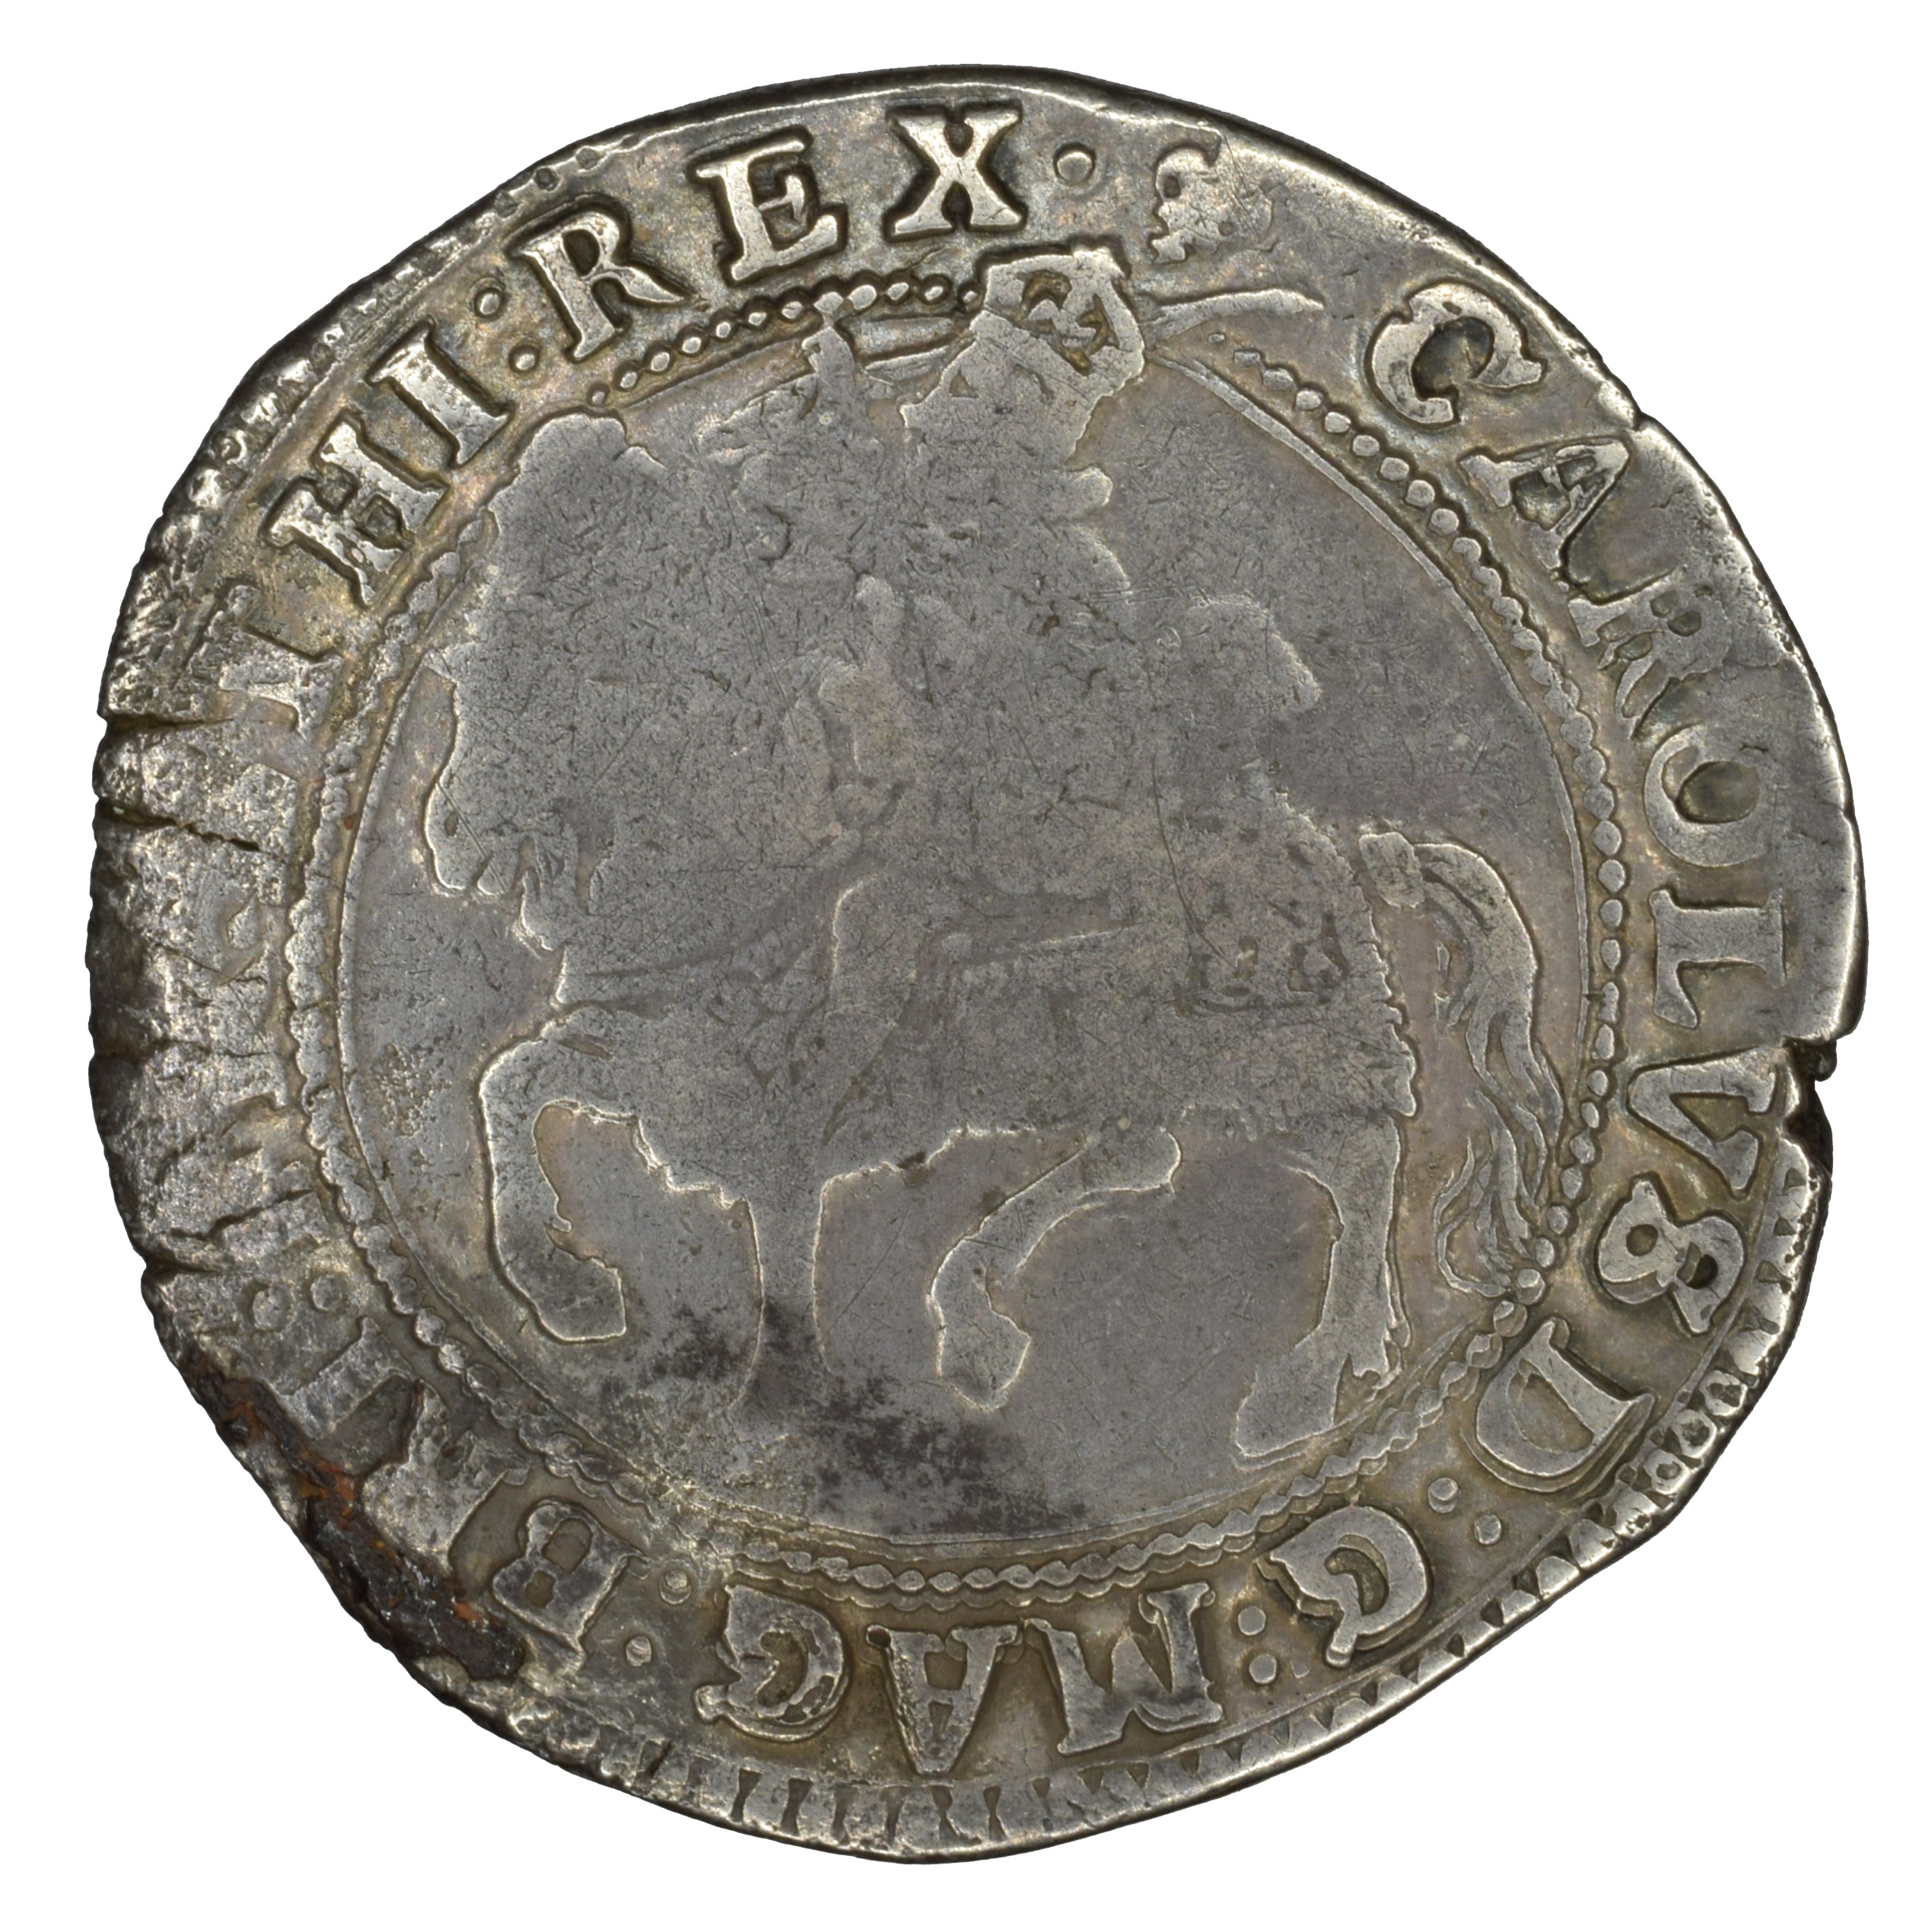 English Civil War Coin